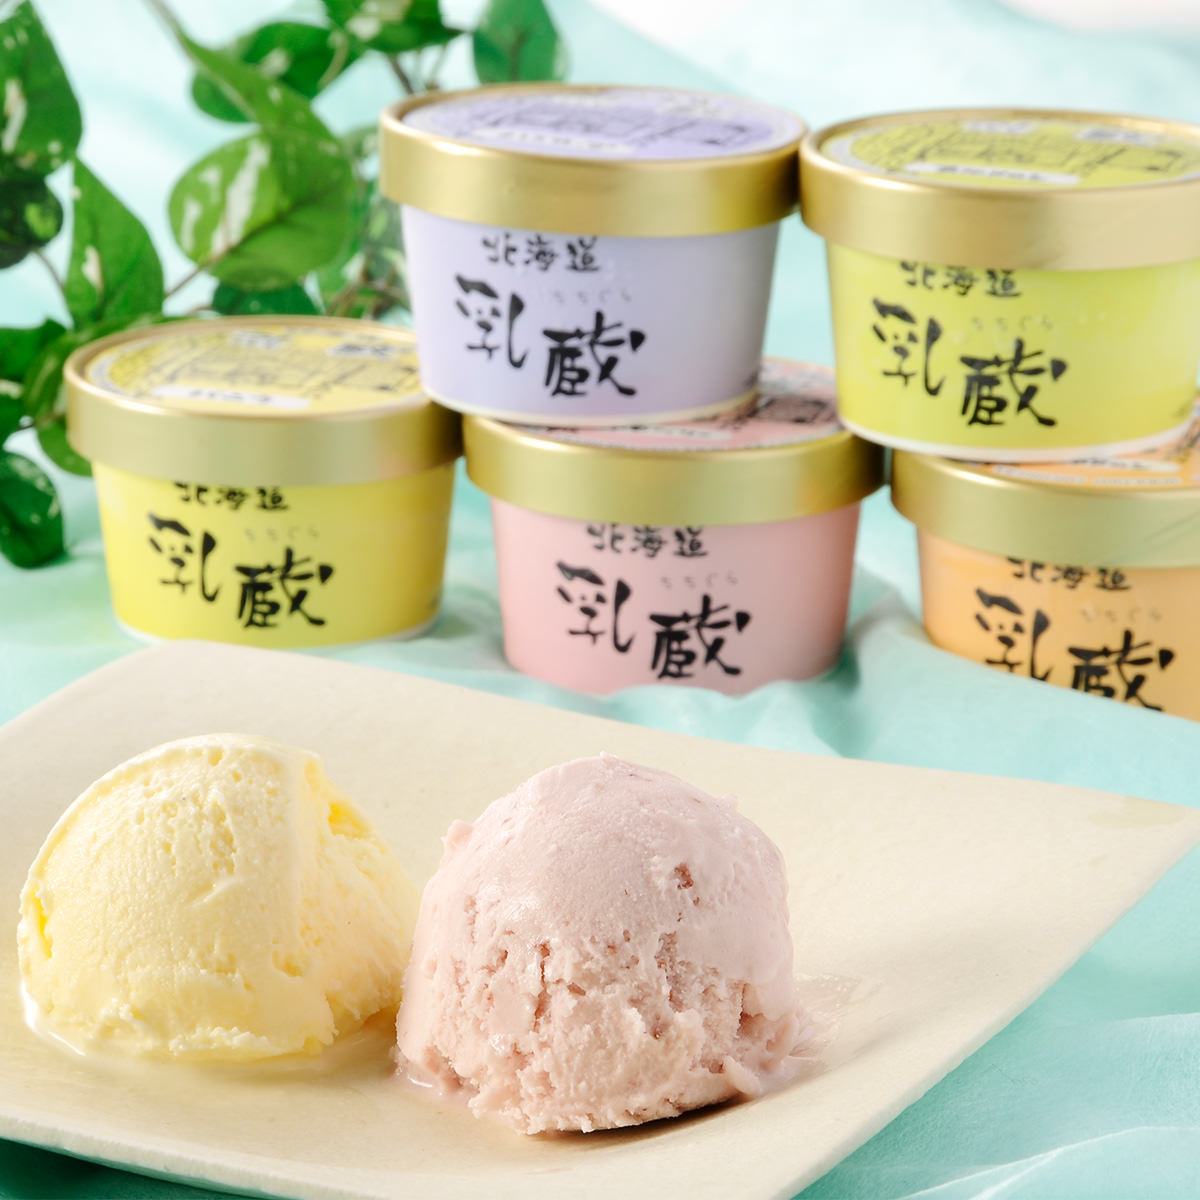 北海道アイスクリーム 5種 10個 セット 乳蔵...の商品画像